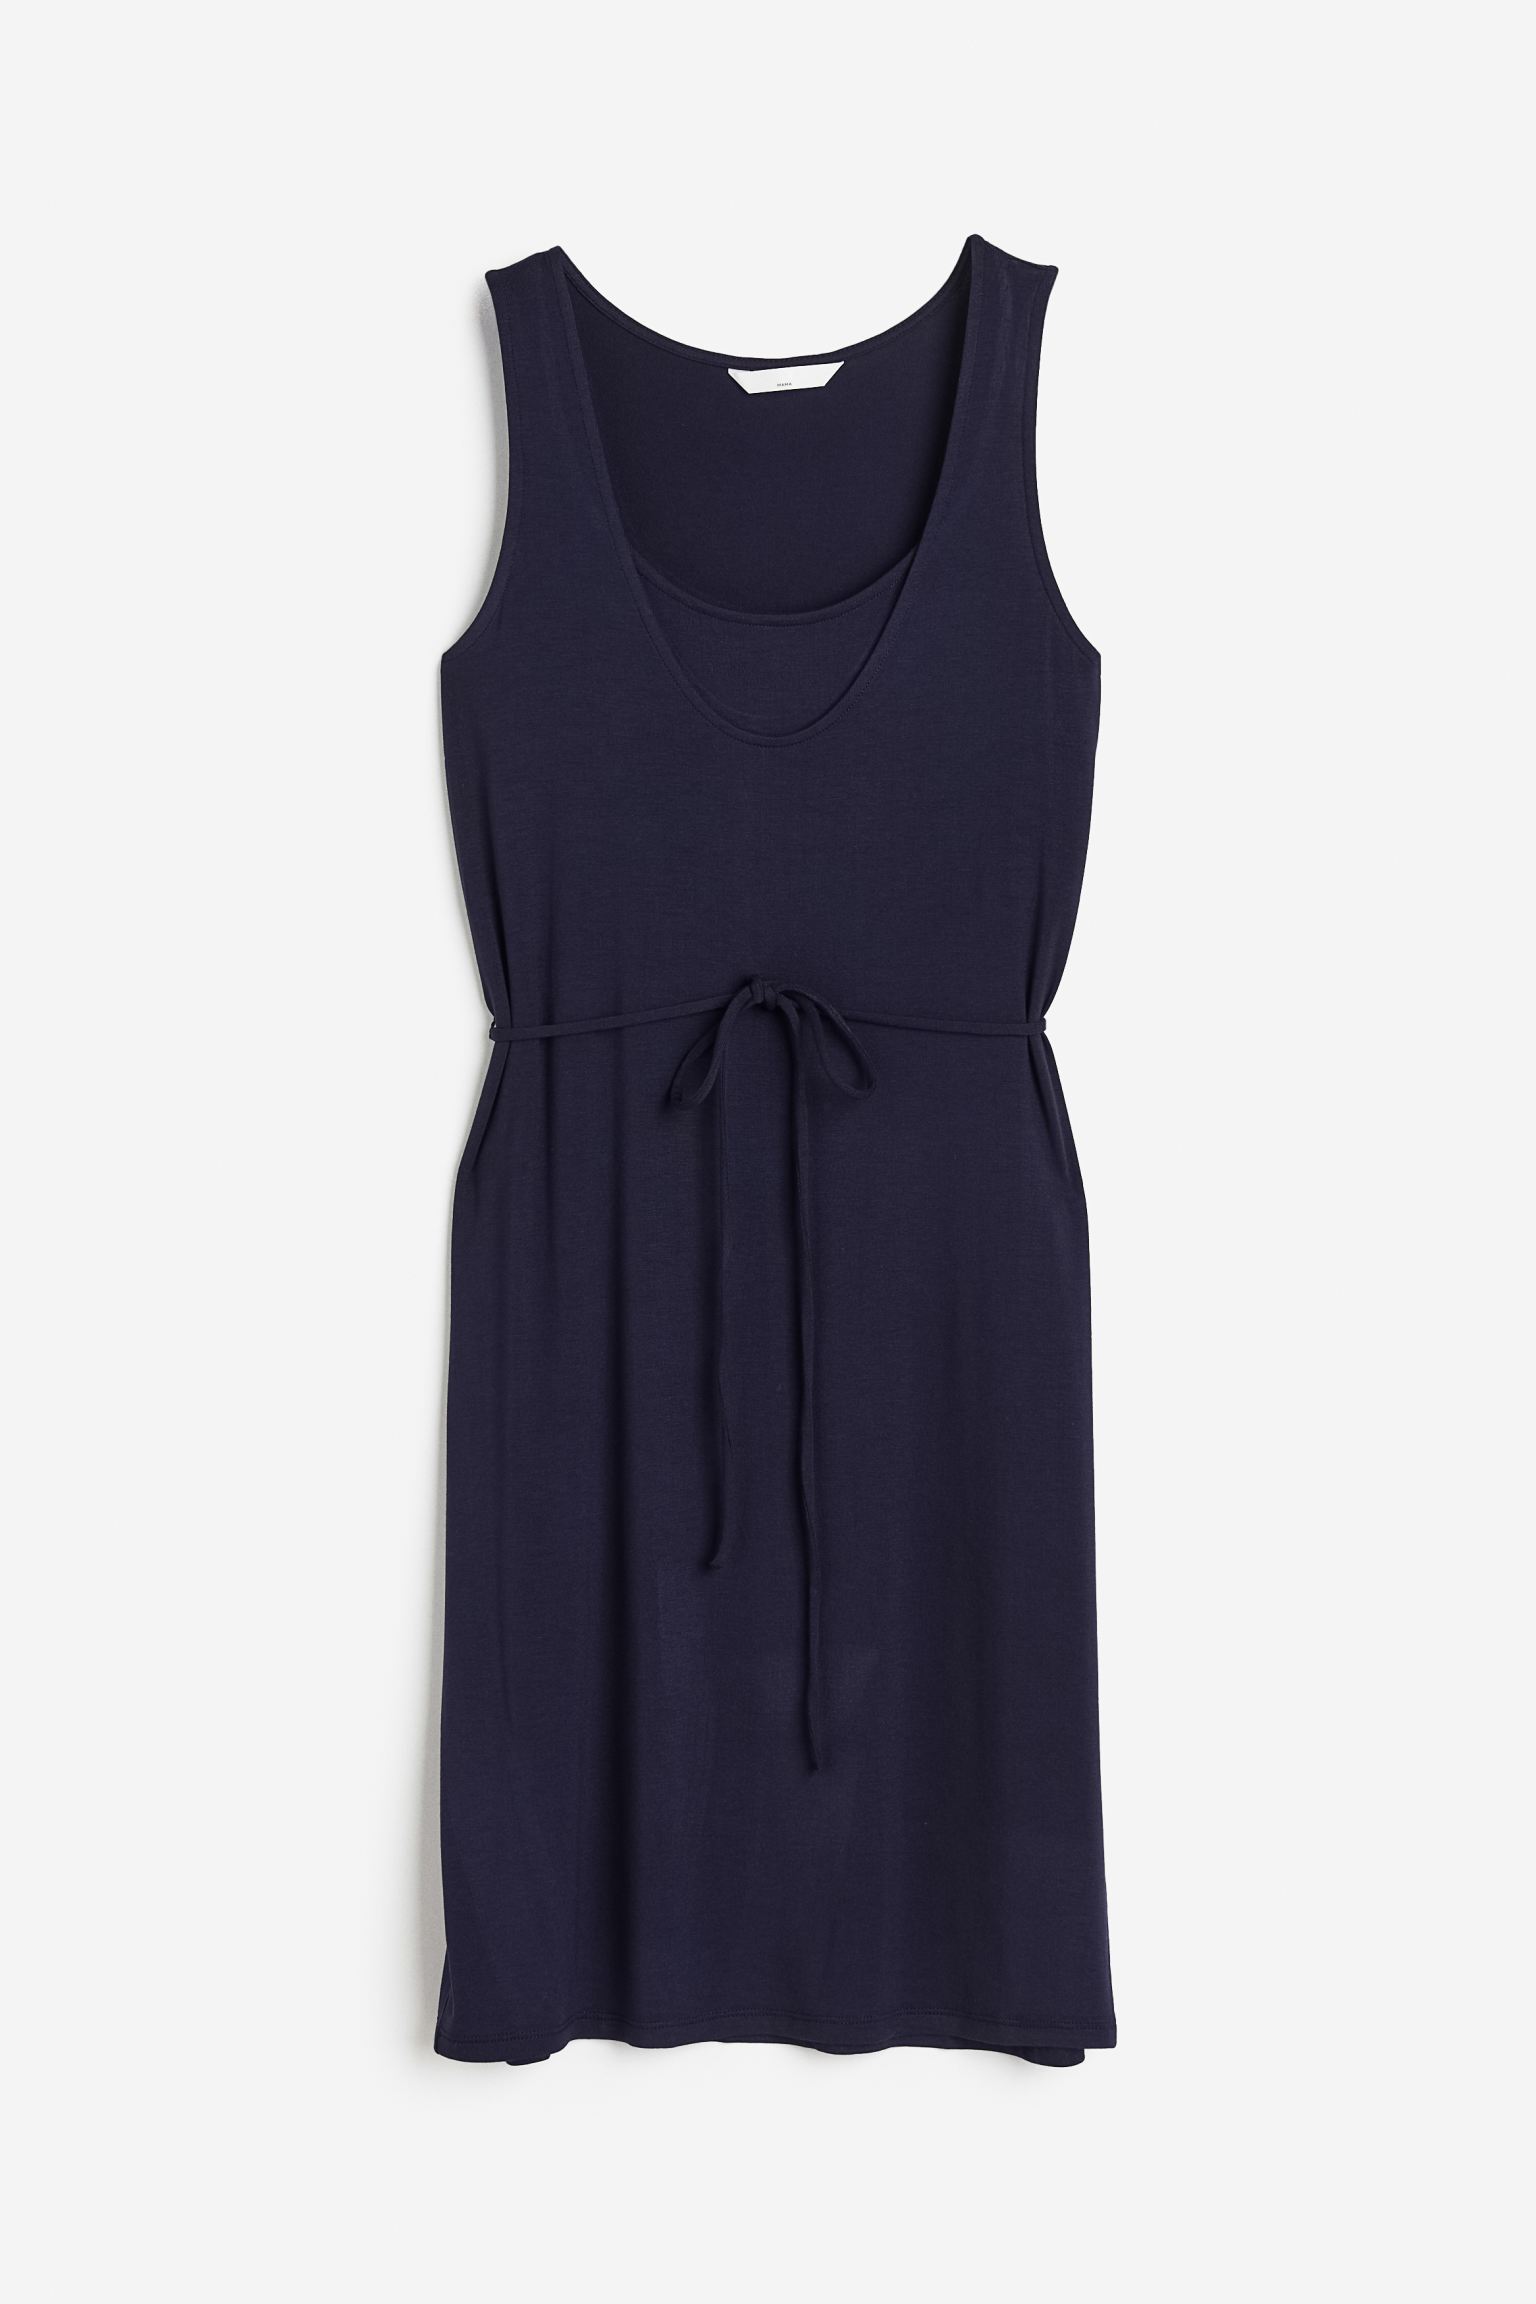 Платье женское H&M 1116459002 синее XL (доставка из-за рубежа)